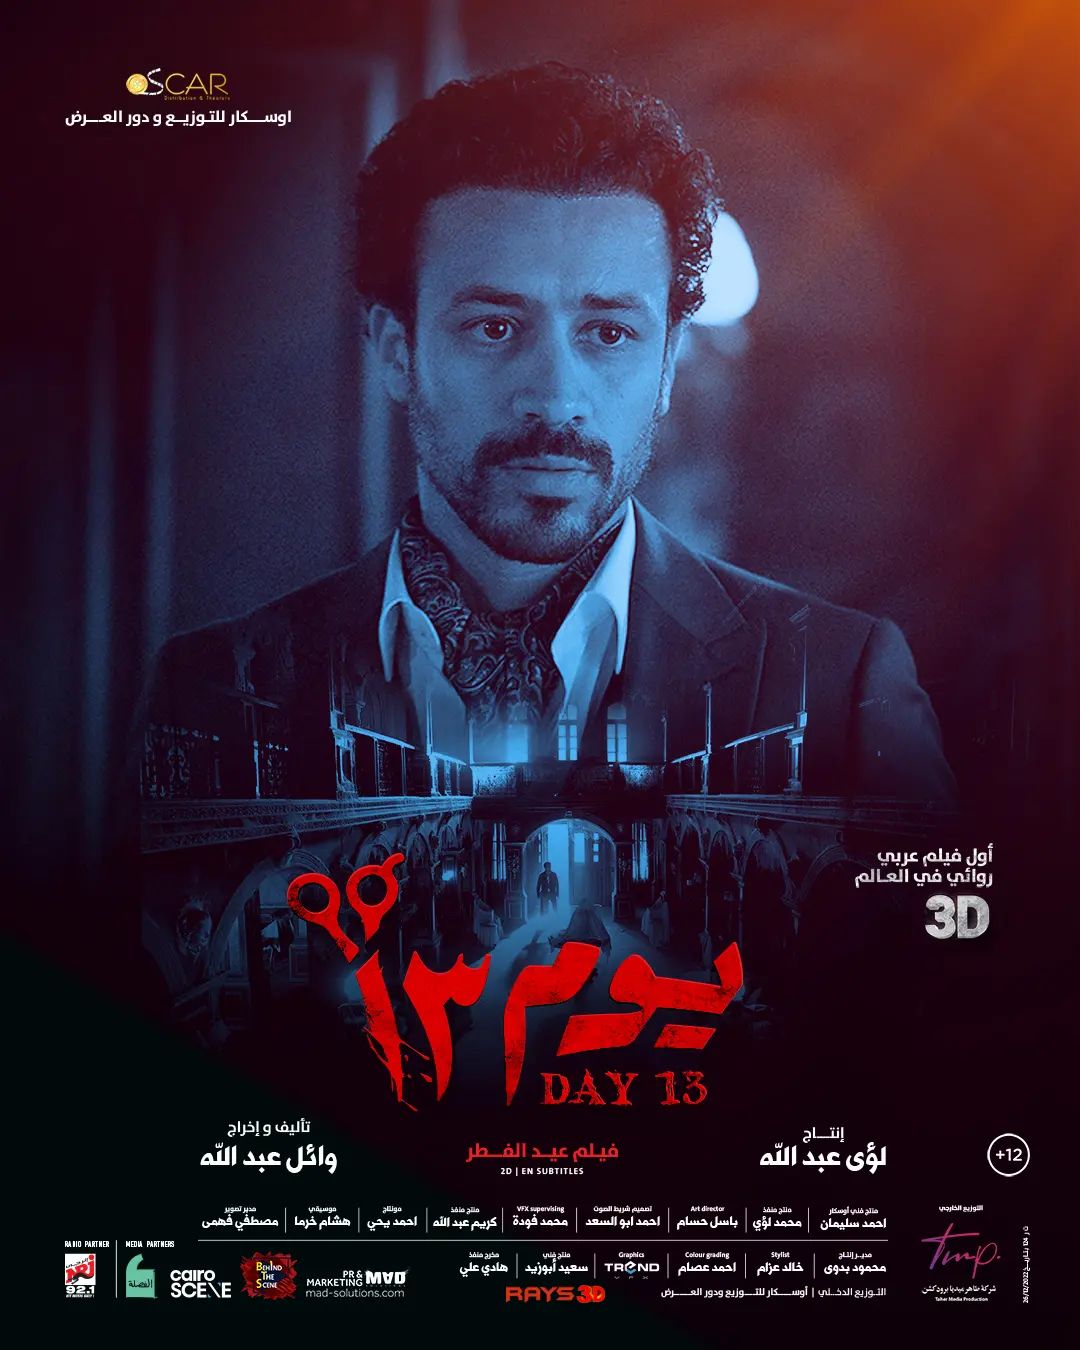 فيلم "يوم 13" لأحمد داود يتخطى 11 مليون جنيه فى الأسبوع الأول من طرحه - اليوم السابع